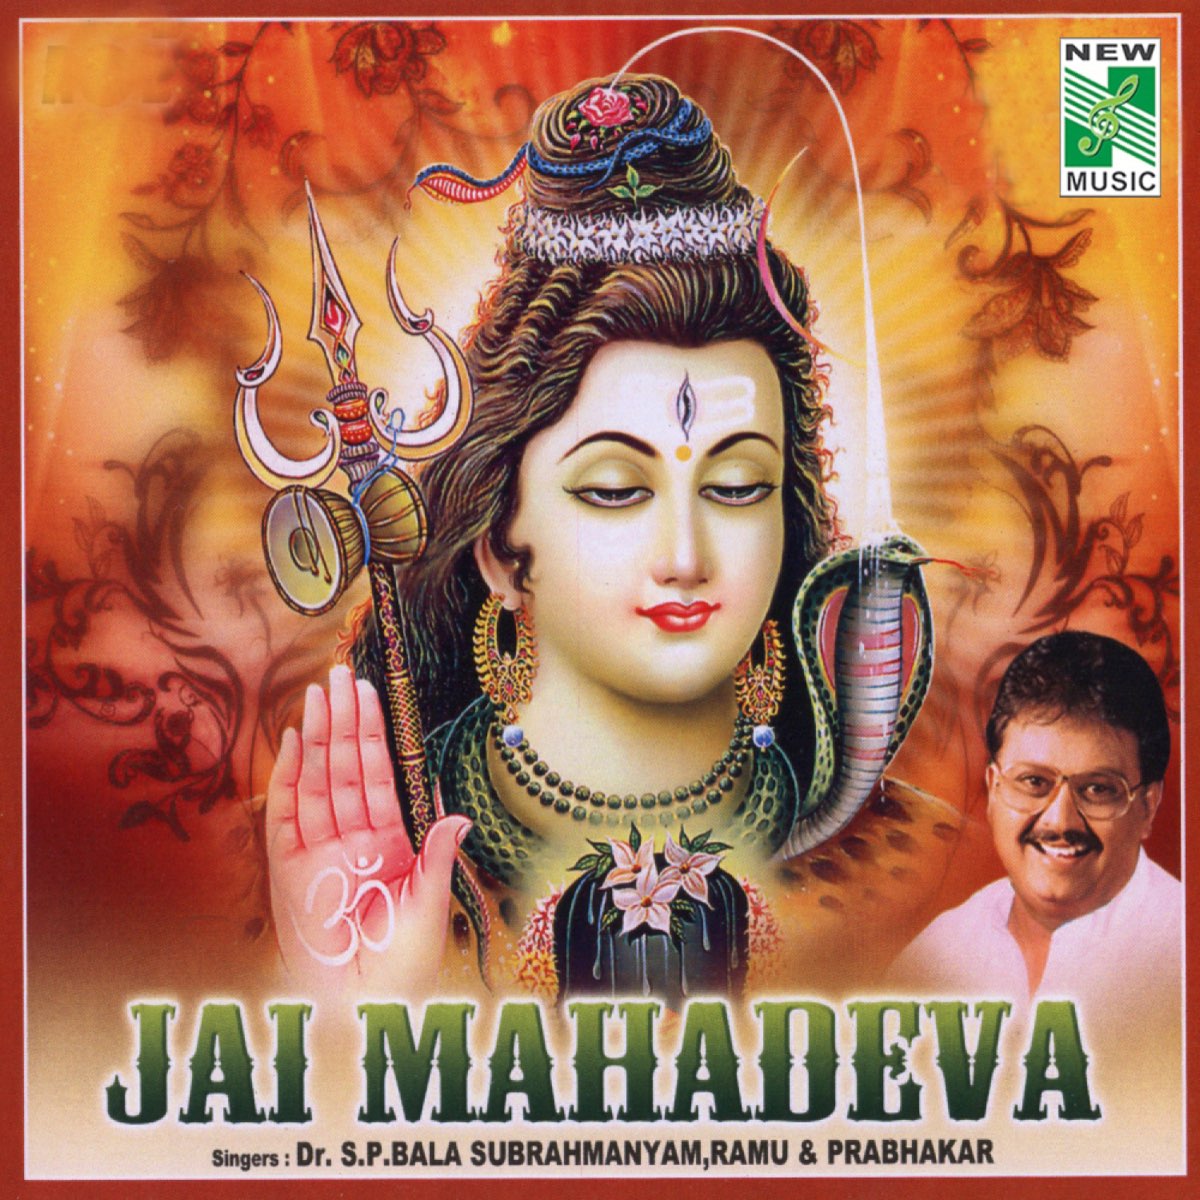 Jai Mahadeva by S.P. Balasubrahmanyam, Ramu & Prabhakar on Apple Music